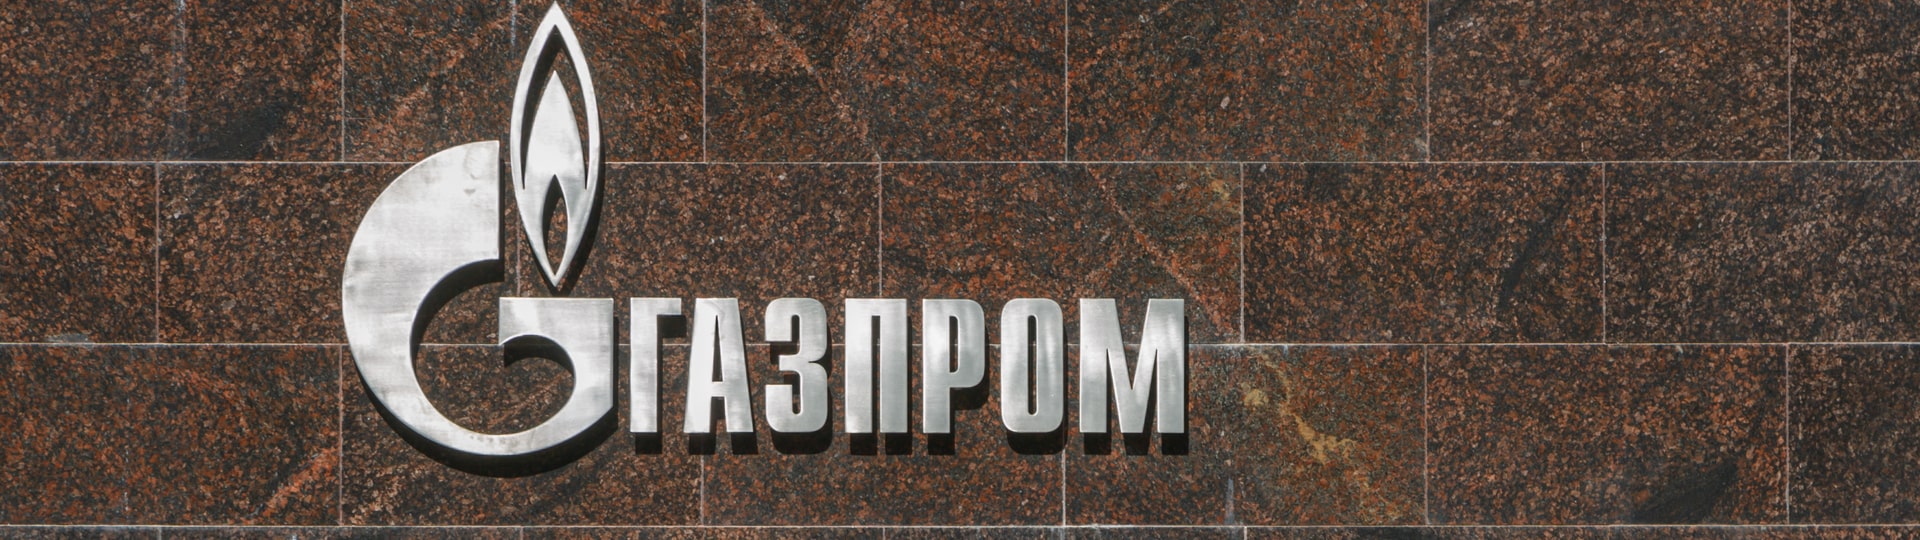 Gazprom podepsal smlouvu s íránskou ropnou firmou